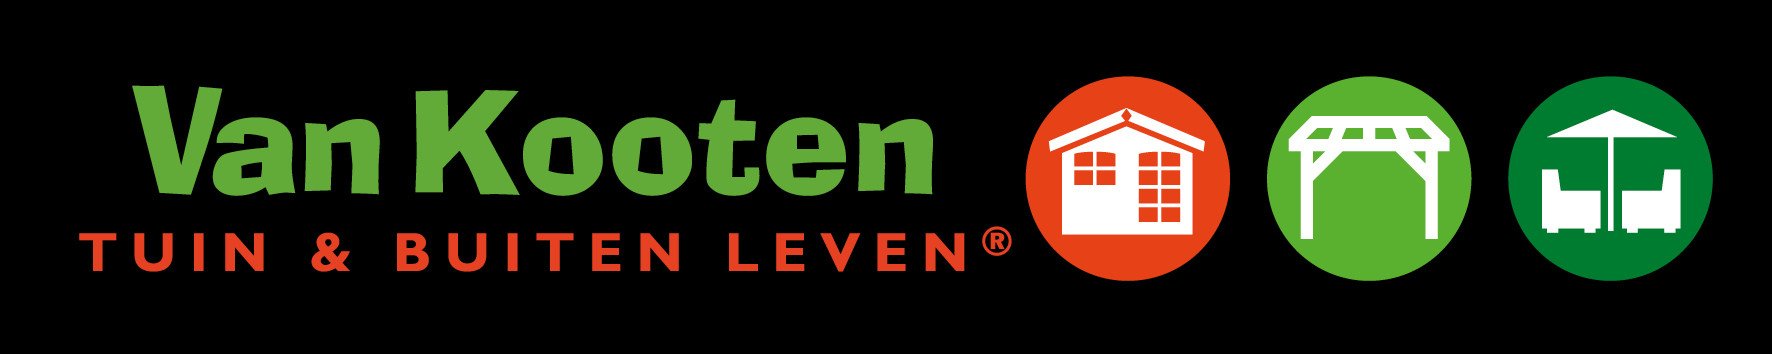 Logo-Van-Kooten.jpg